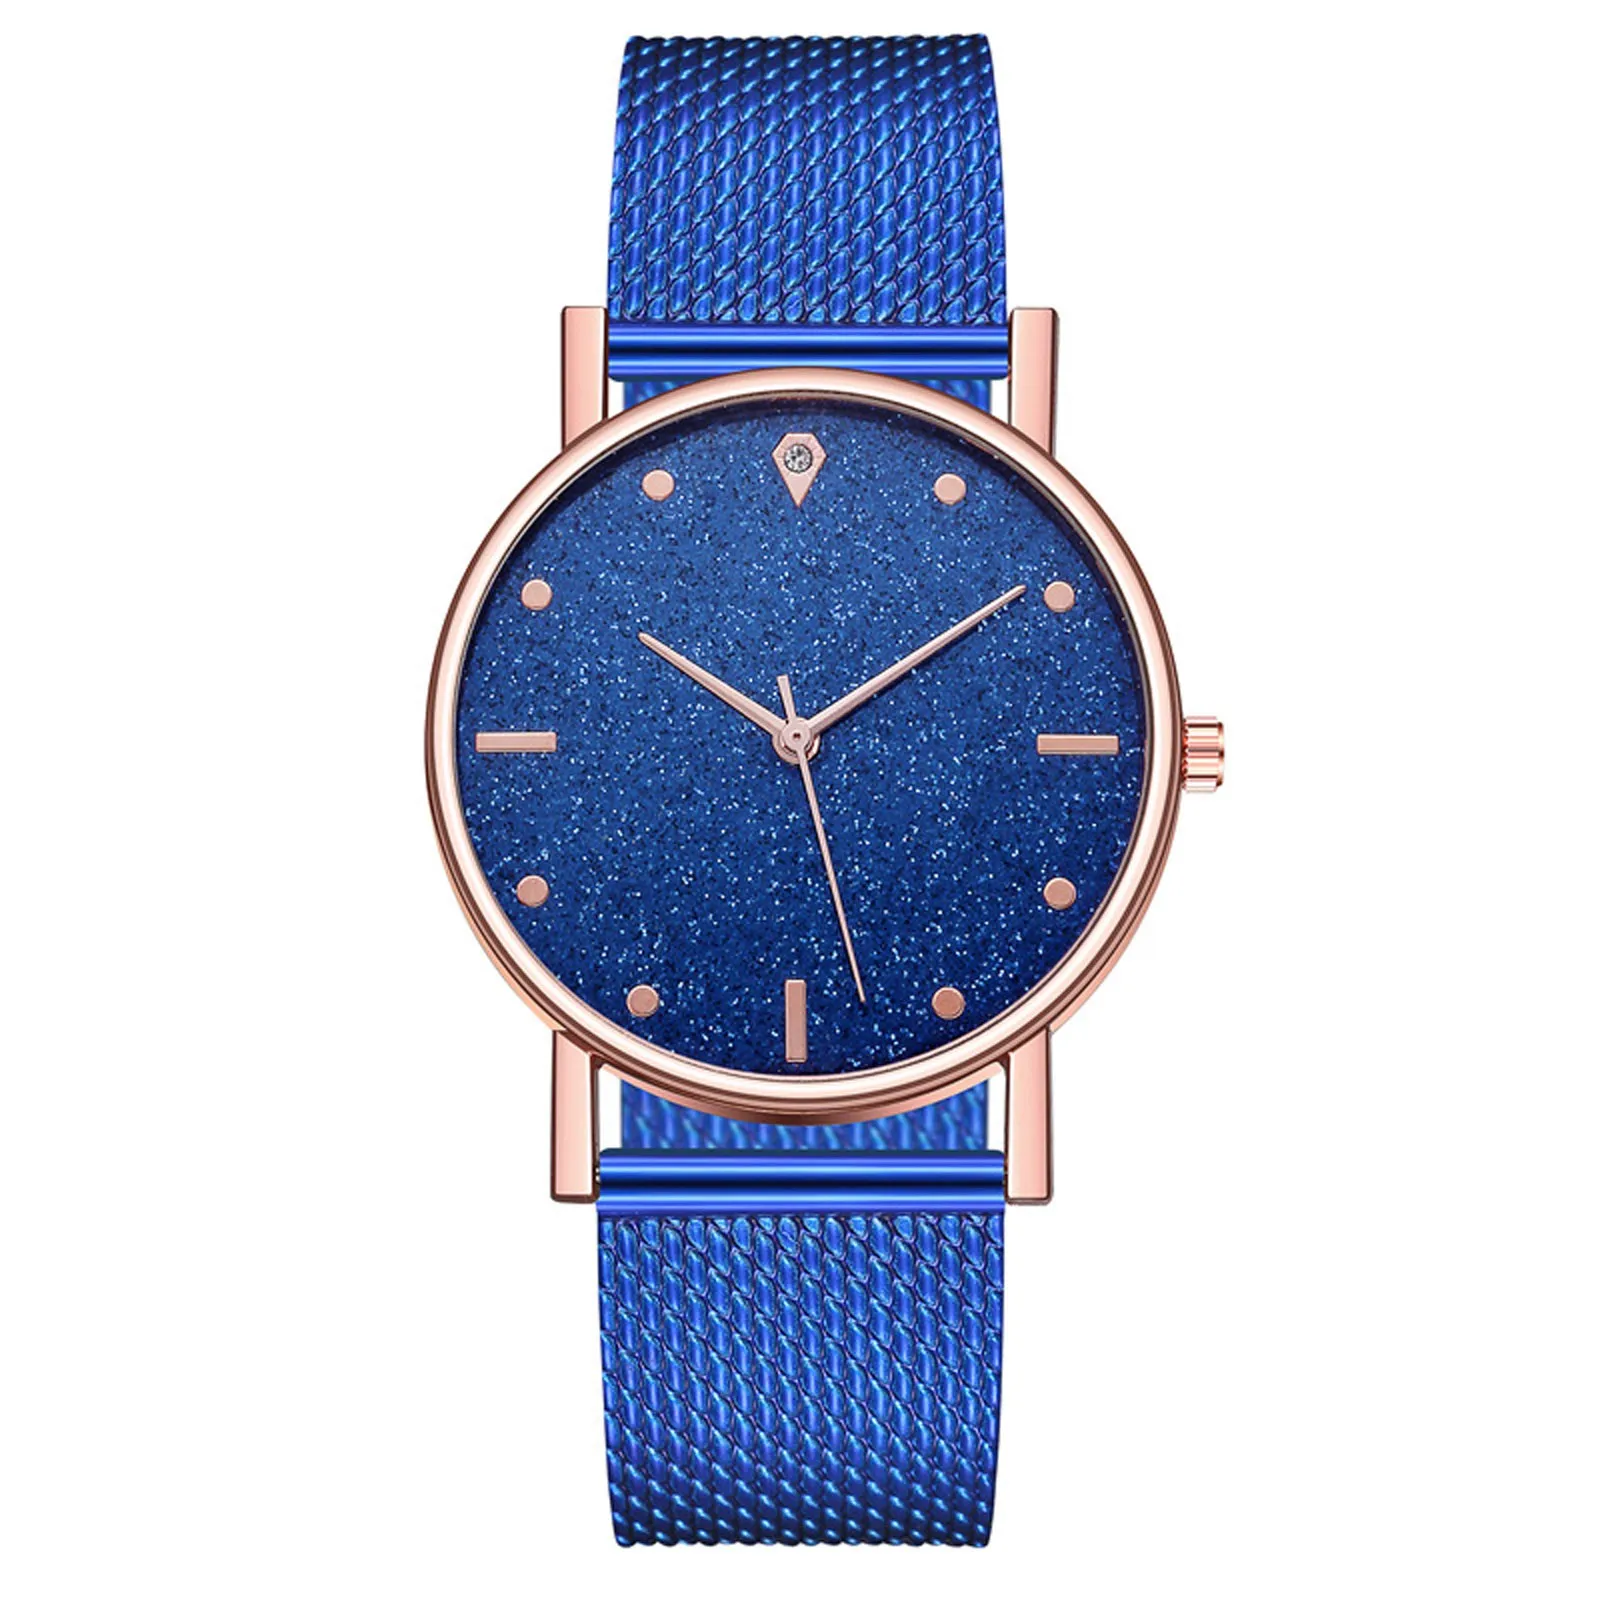 

Luxury Watches Quartz Watch Stainless Steel Dial Bracele Watch Fashionable Simple Style Quartz Wristwatch Reloj Mujer relogio